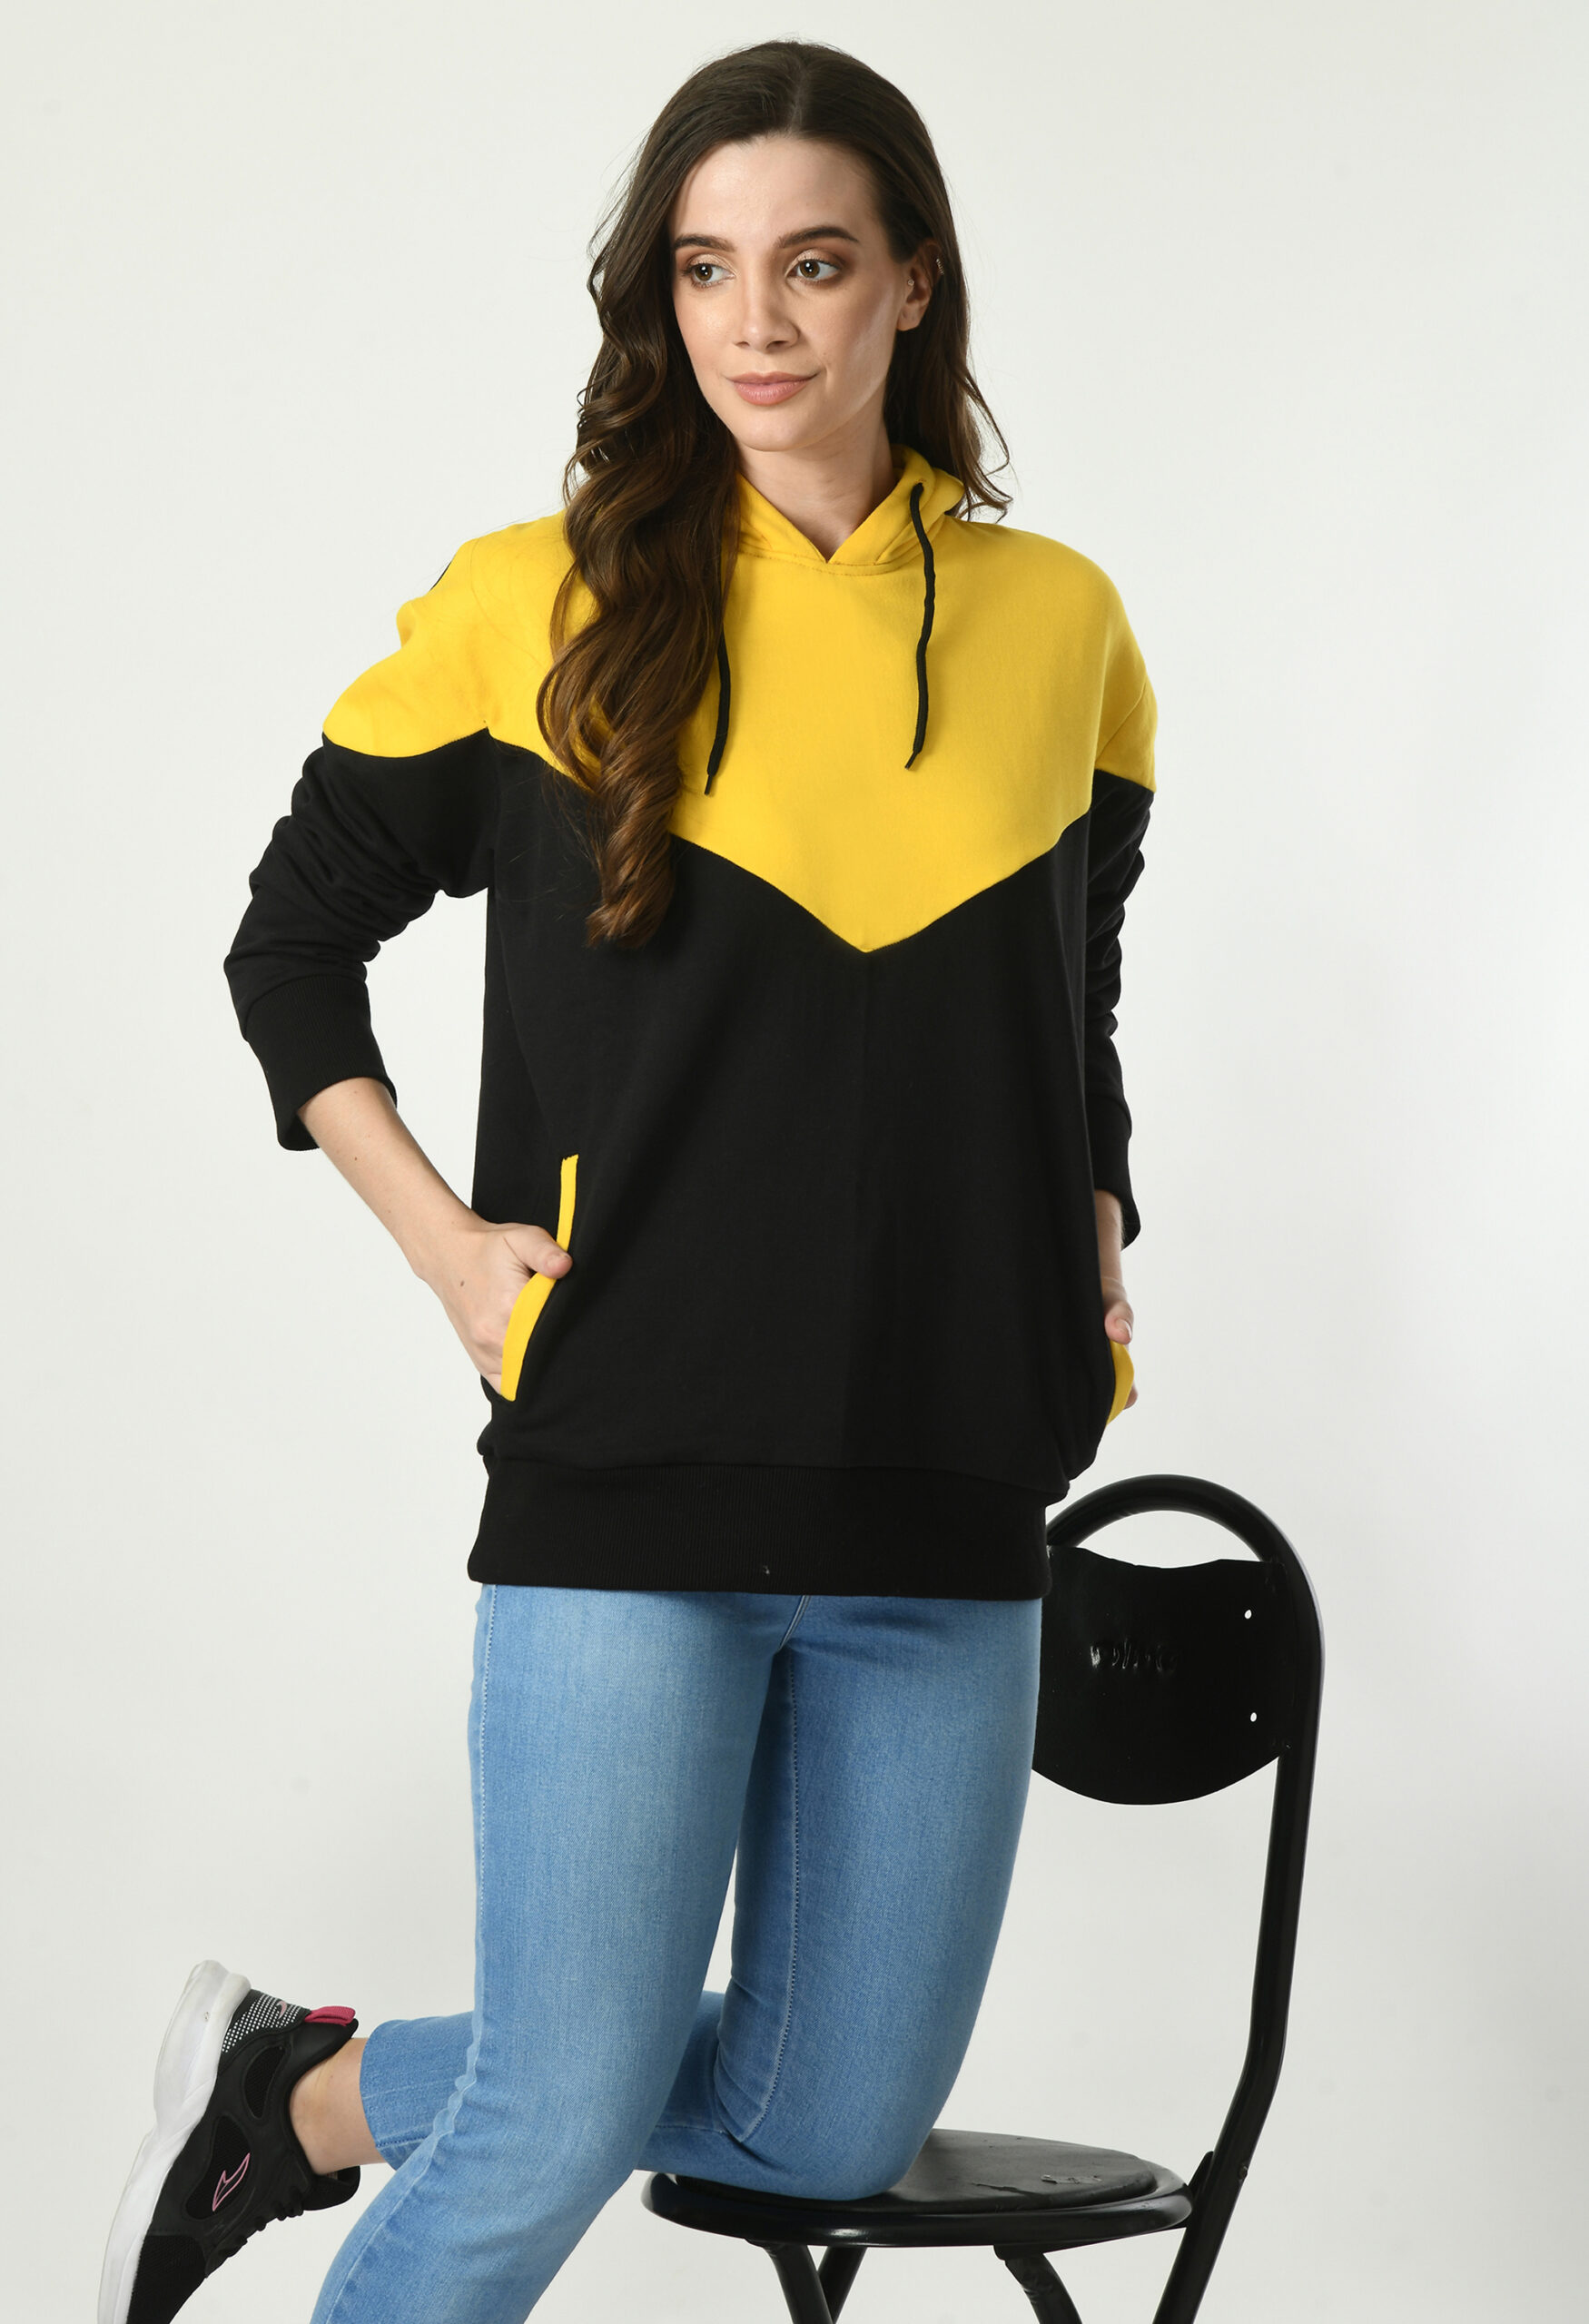 Designer Hoodie for Women - Yellow & Black V Shaped - 7